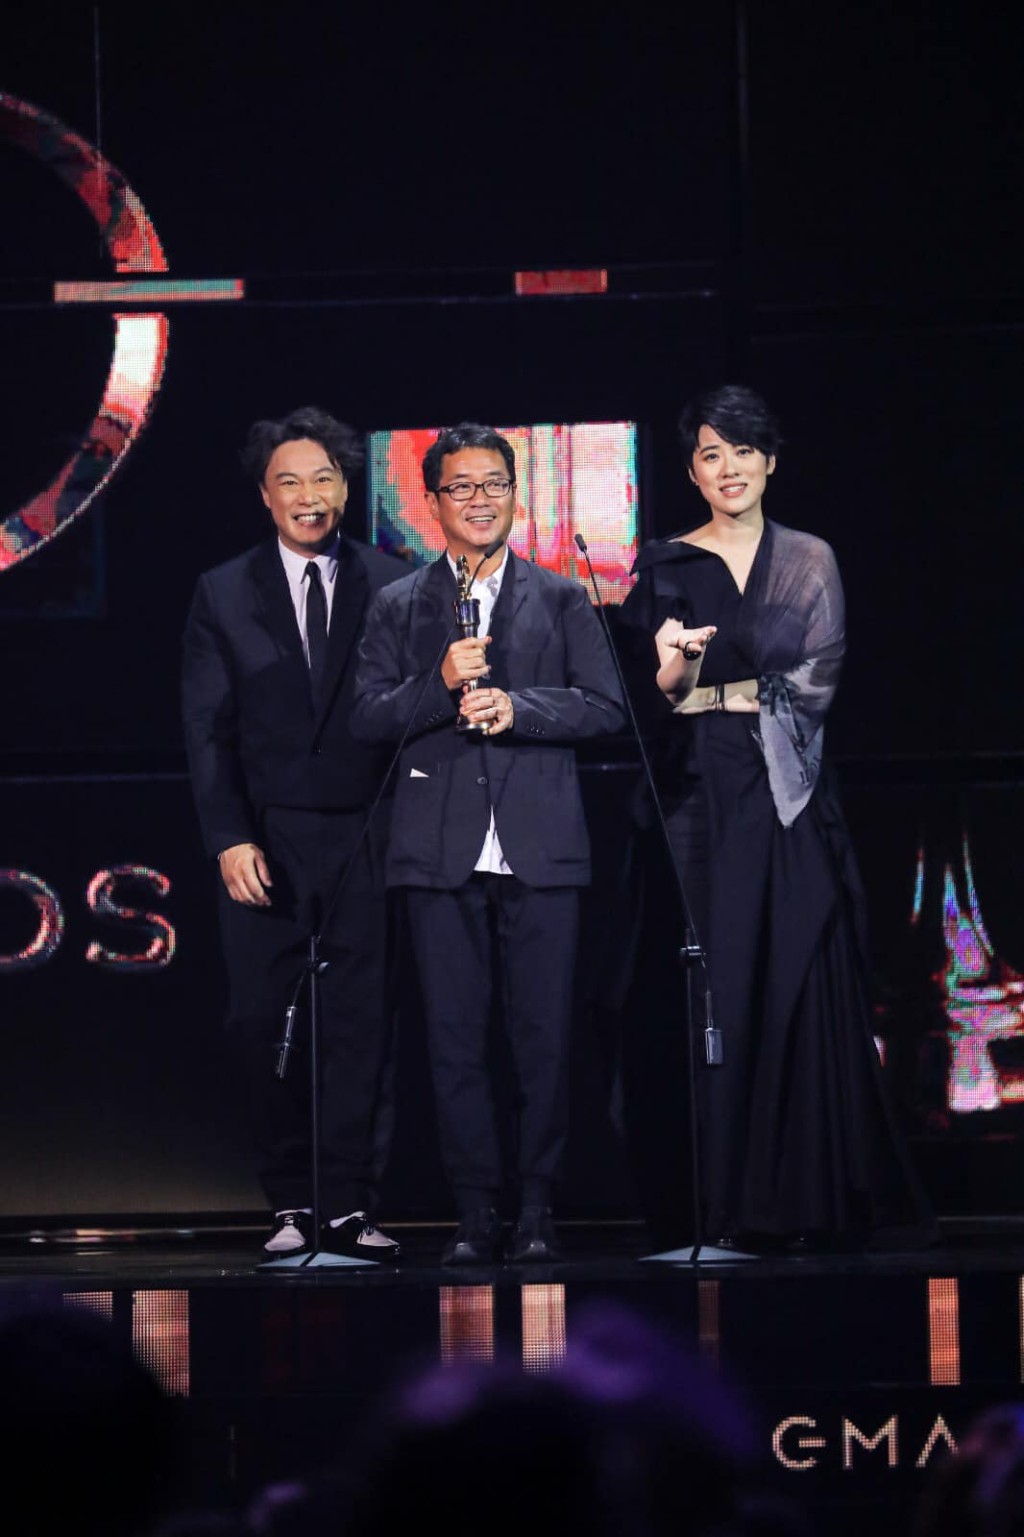 陳奕迅與岑寧兒代替王雙駿領第30屆《金曲獎》的「最佳專輯製作人」獎。